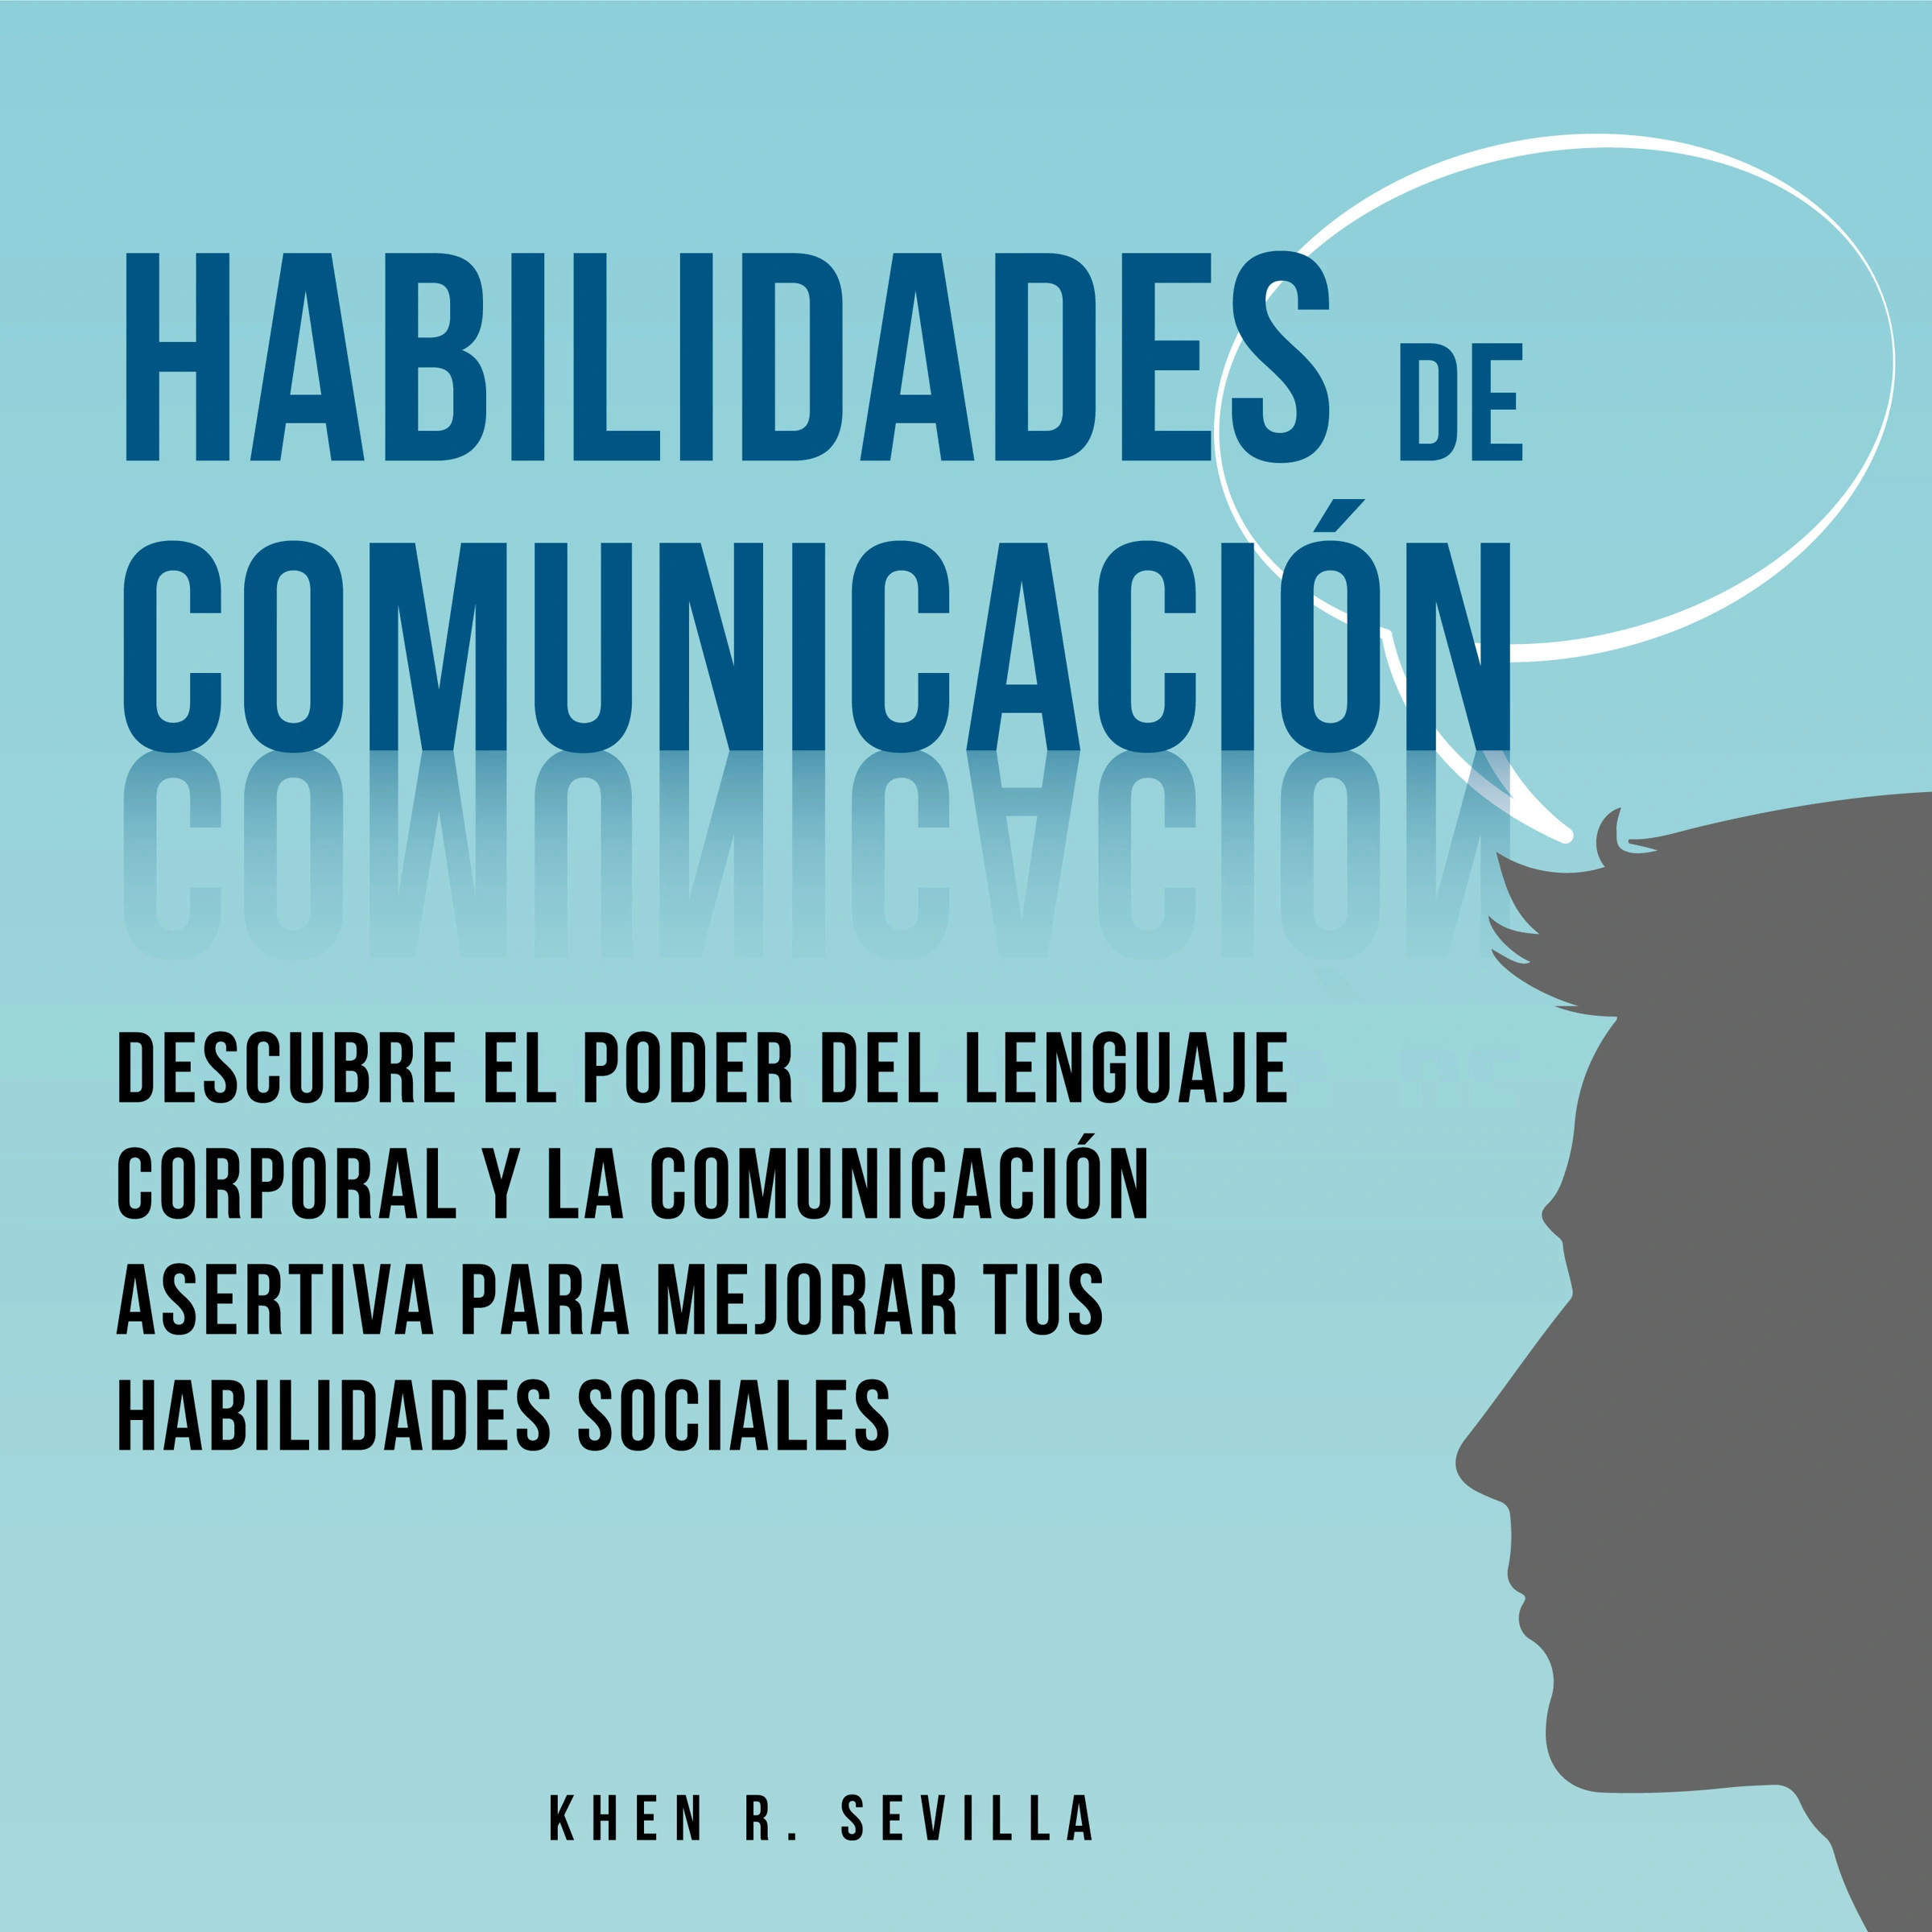 Habilidades De Comunicación: Descubre El Poder Del Lenguaje Corporal Y La Comunicación Asertiva Para Mejorar Tus Habilidades Sociales Audiobook by Khen R. Sevilla